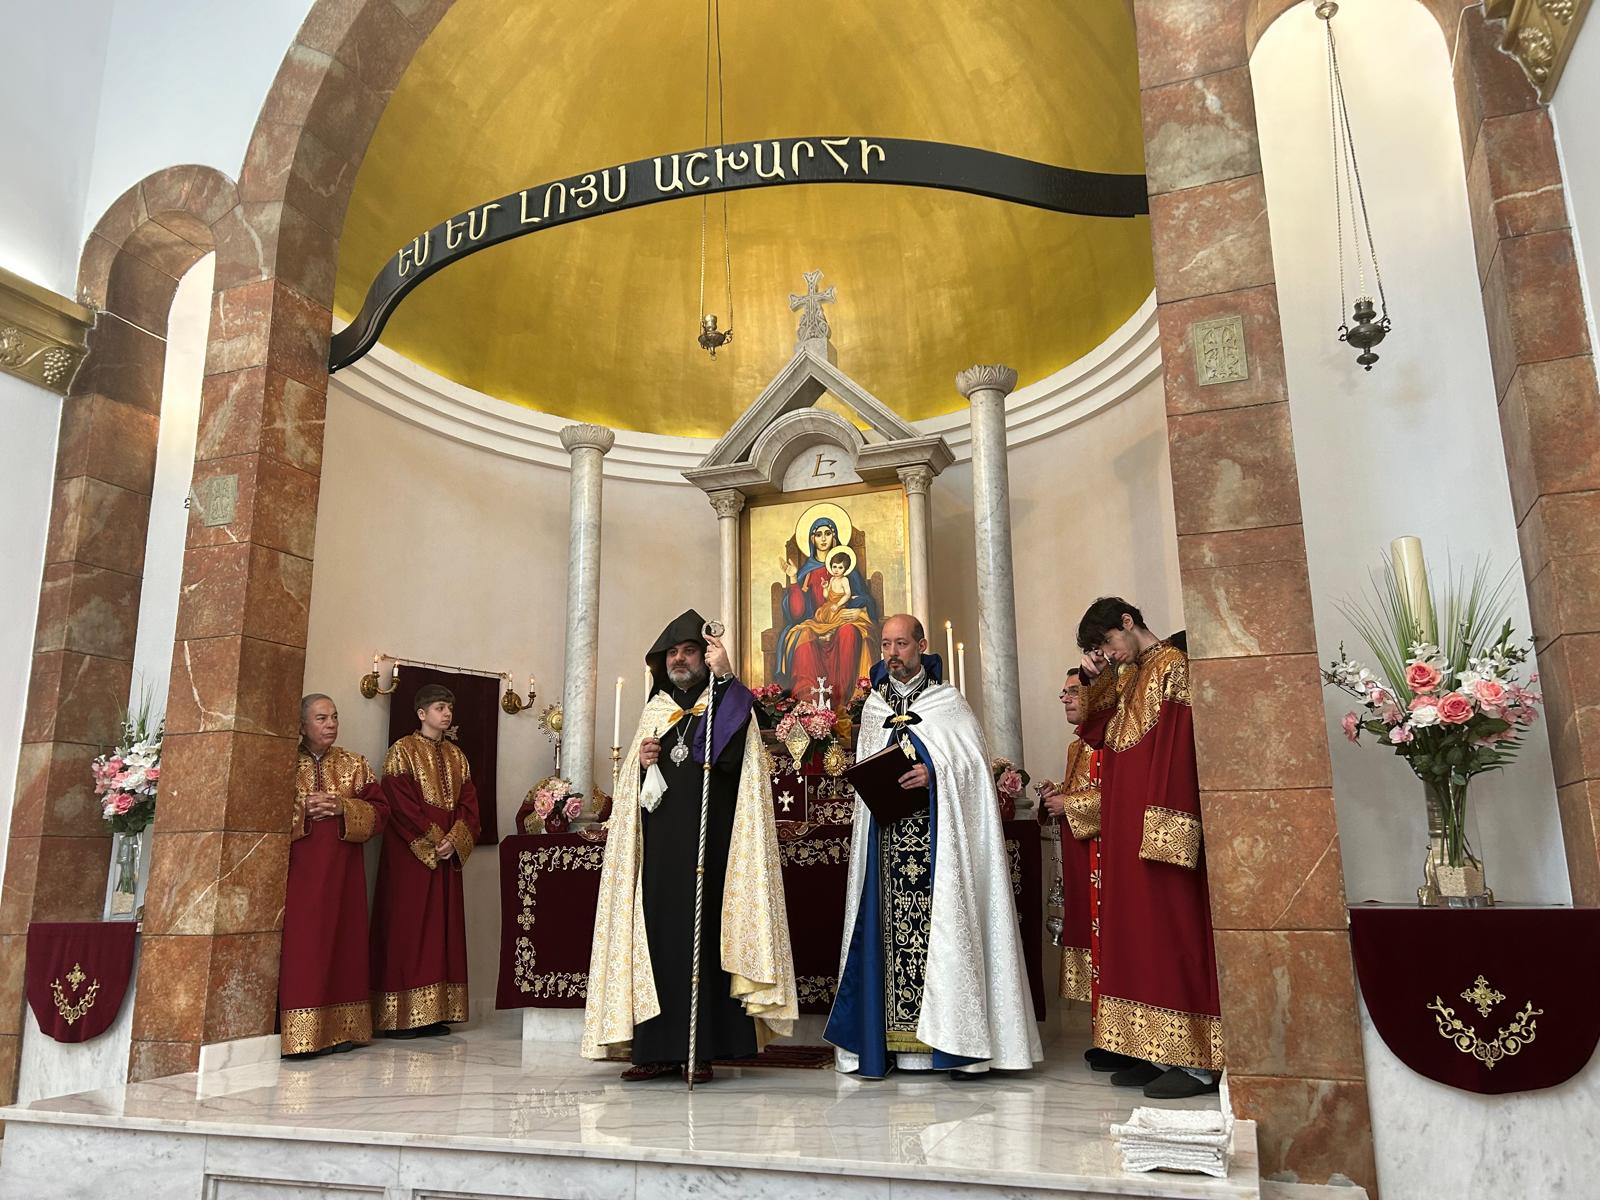 Վիեննայի Սուրբ Հռիփսիմե եկեղեցում մատուցվել է Հայոց ցեղասպանության սրբադասված նահատակների հիշատակին նվիրված Բարեխոսական կարգ